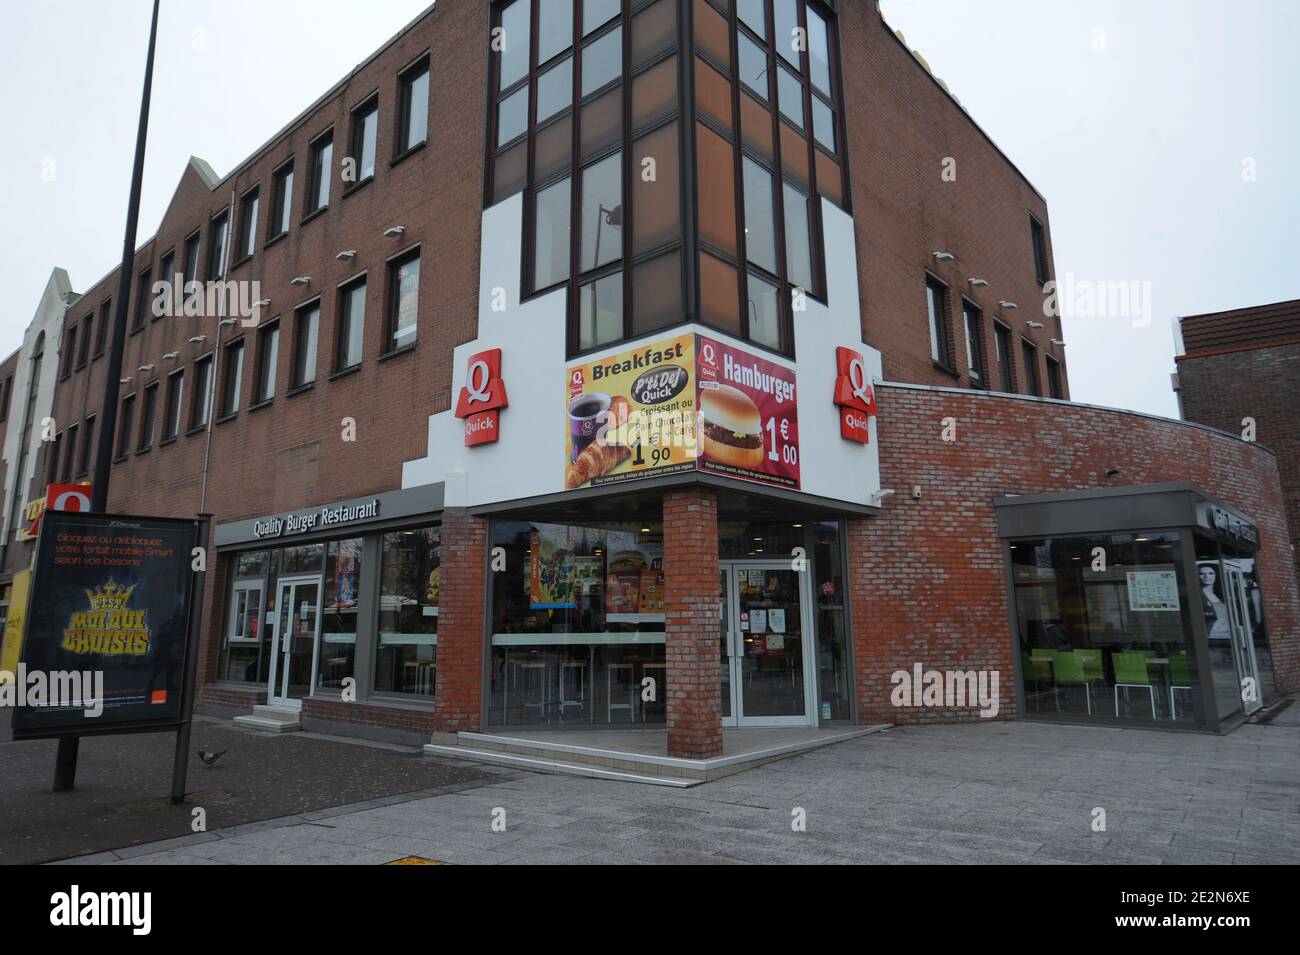 Vue sur le restaurant Quick fast food qui lance des menus halal uniquement  à Roubaix, dans le nord de la France, le 18 février 2010. Comme l'offre  alimentaire est complètement halal et